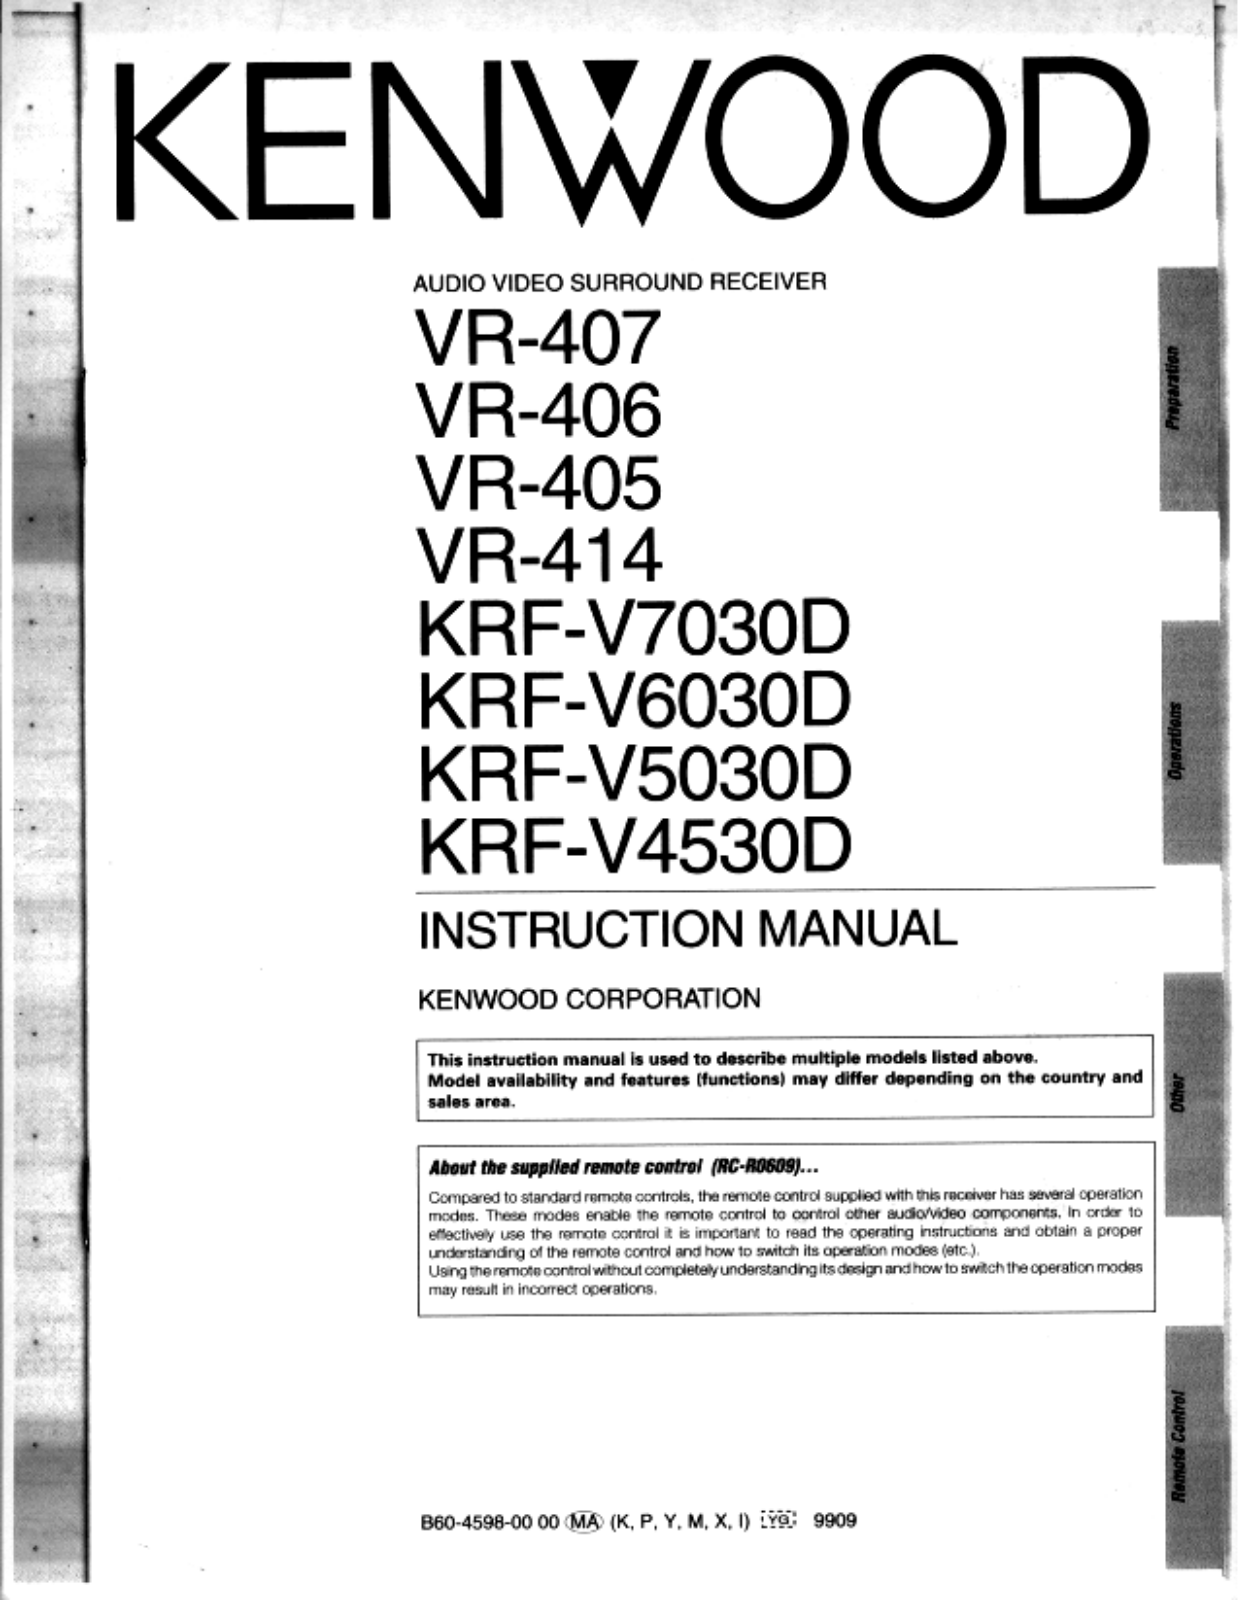 Kenwood VR-407, VR-414, VR-405, KRF-V7030D, KRF-V5030D Owner's Manual